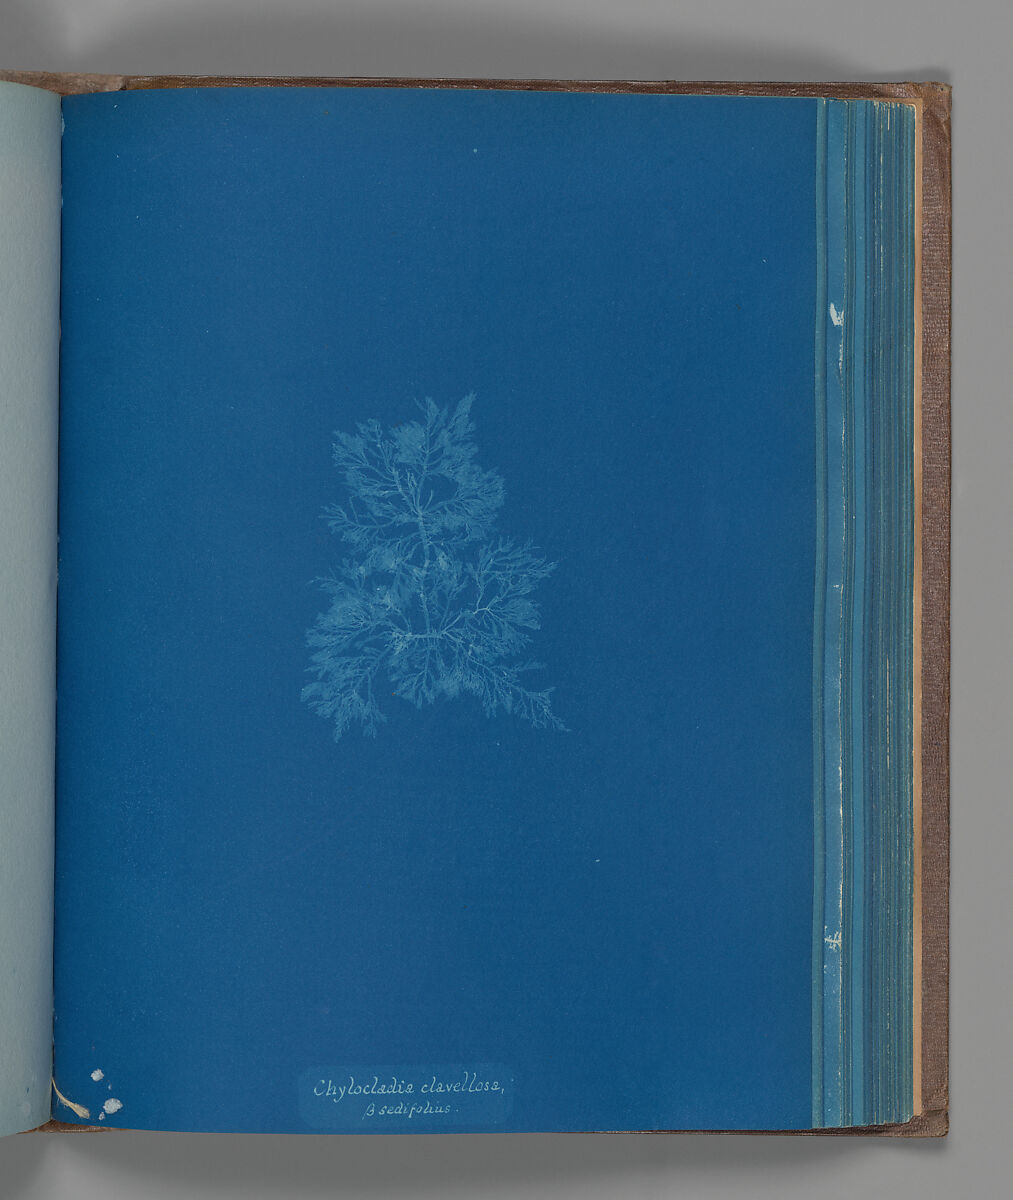 Chylocladia clavellosa, ß sedifolius, Anna Atkins (British, 1799–1871), Cyanotype 